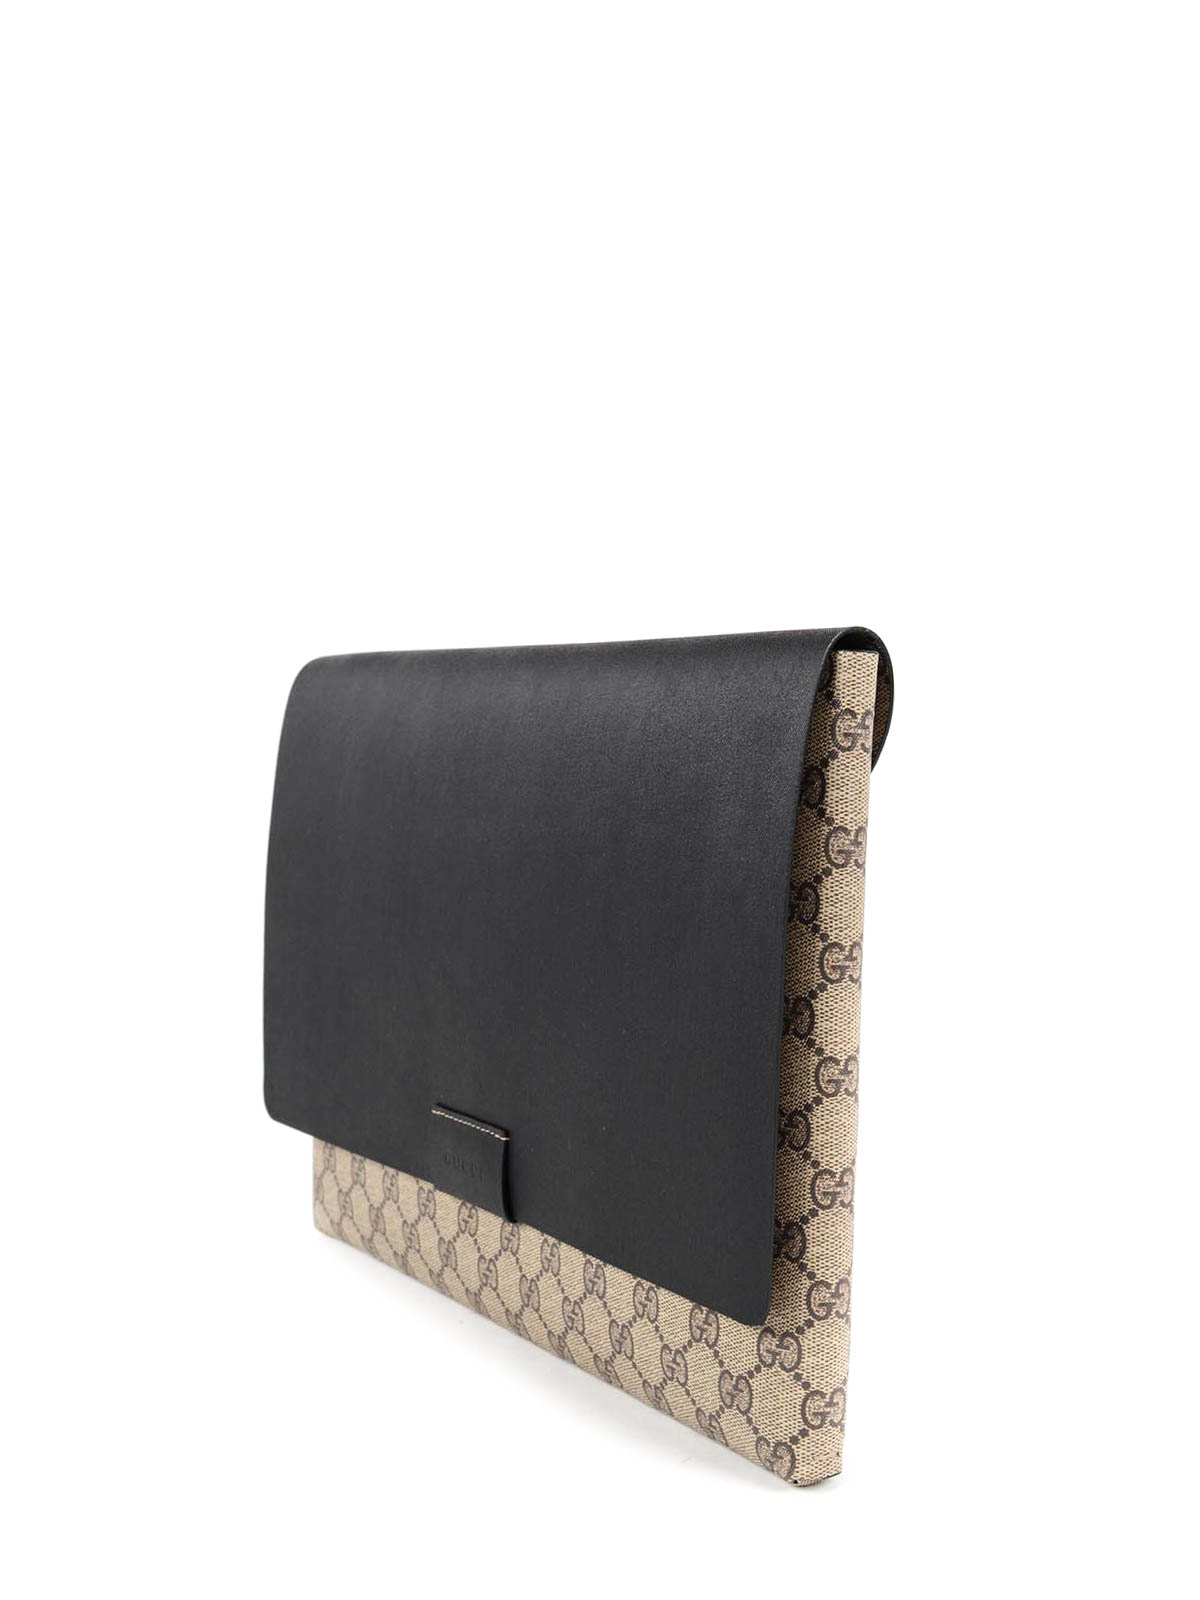 Gucci - GG supreme iPad pouch - Cases 